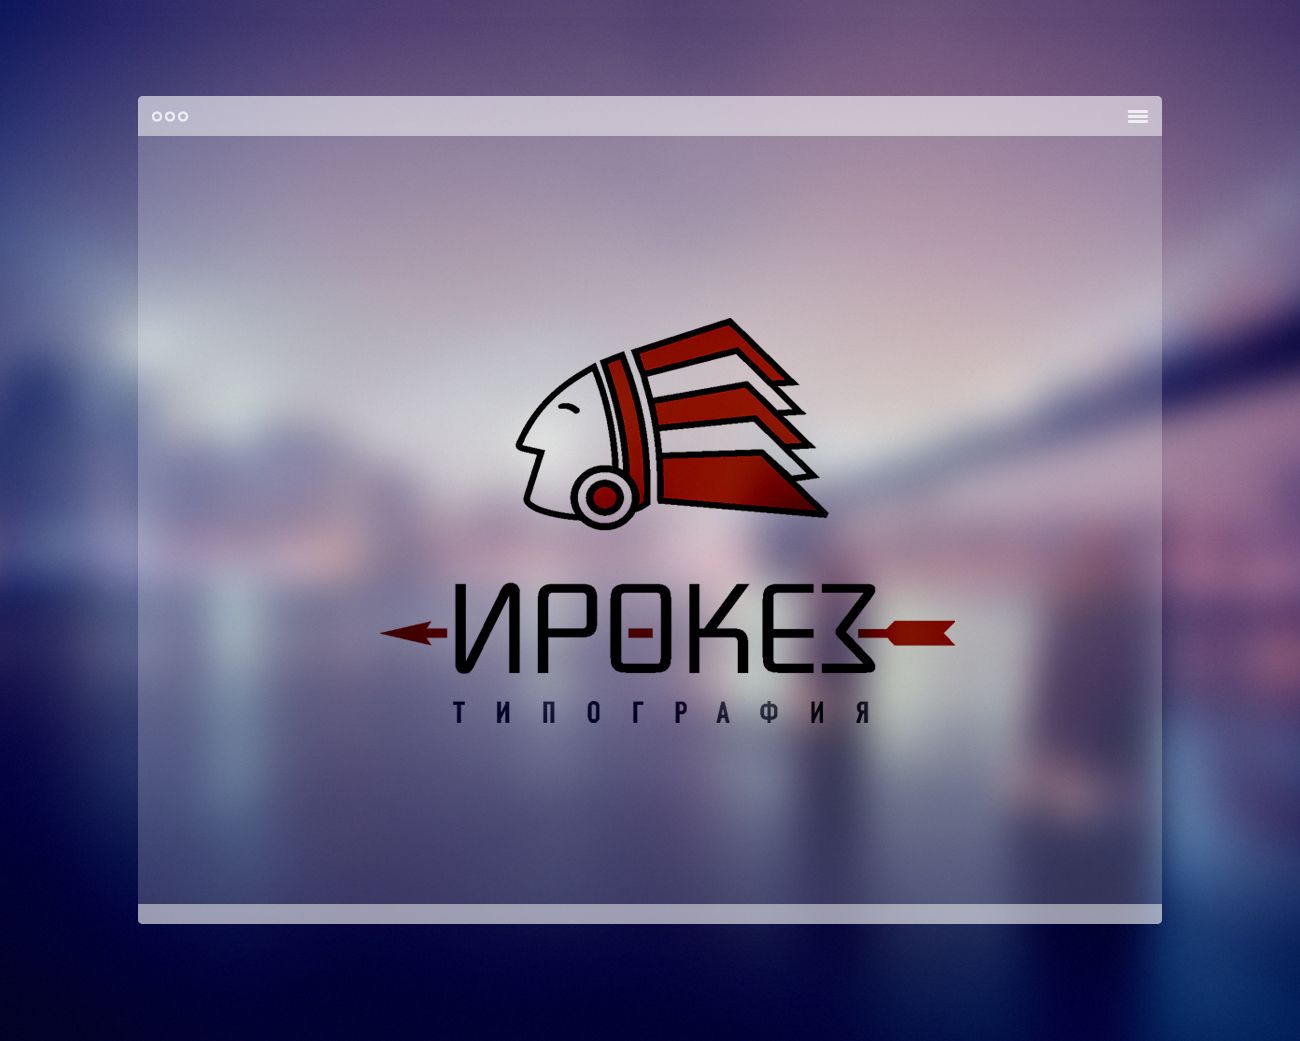 Редизайн лого и дизайн ФС для типографии Ирокез - дизайнер radchuk-ruslan